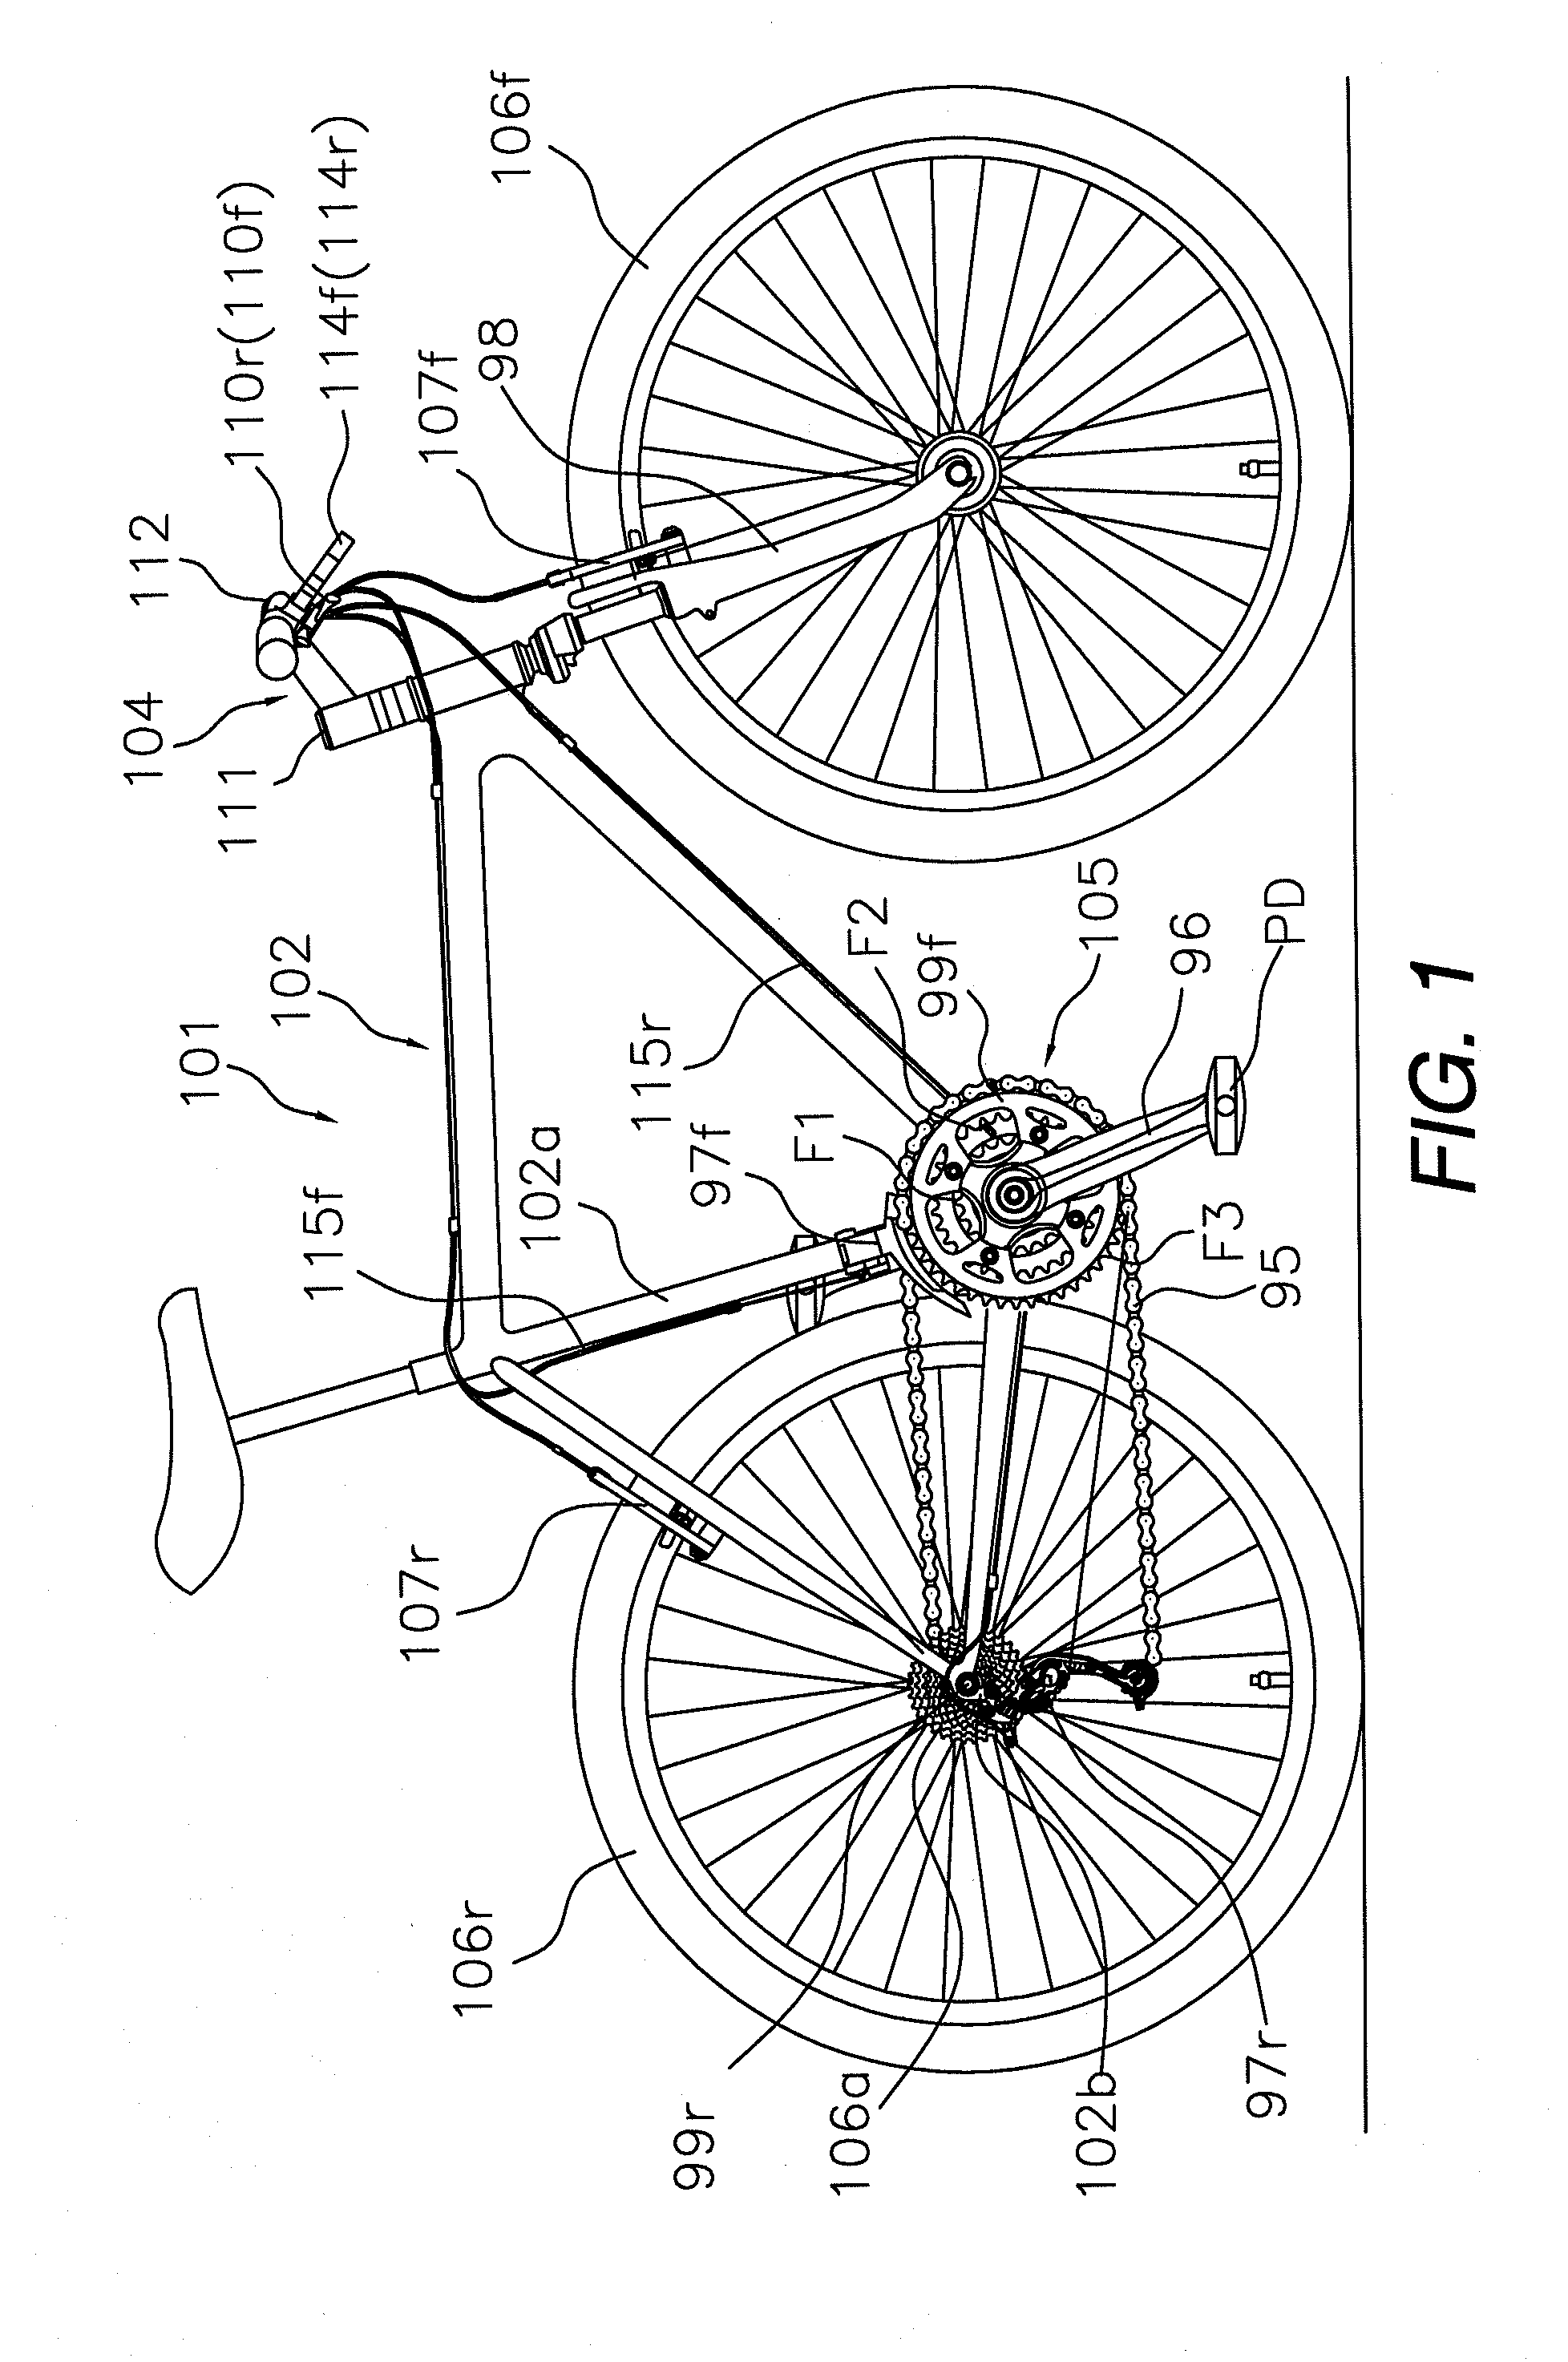 Bicycle rear derailleur